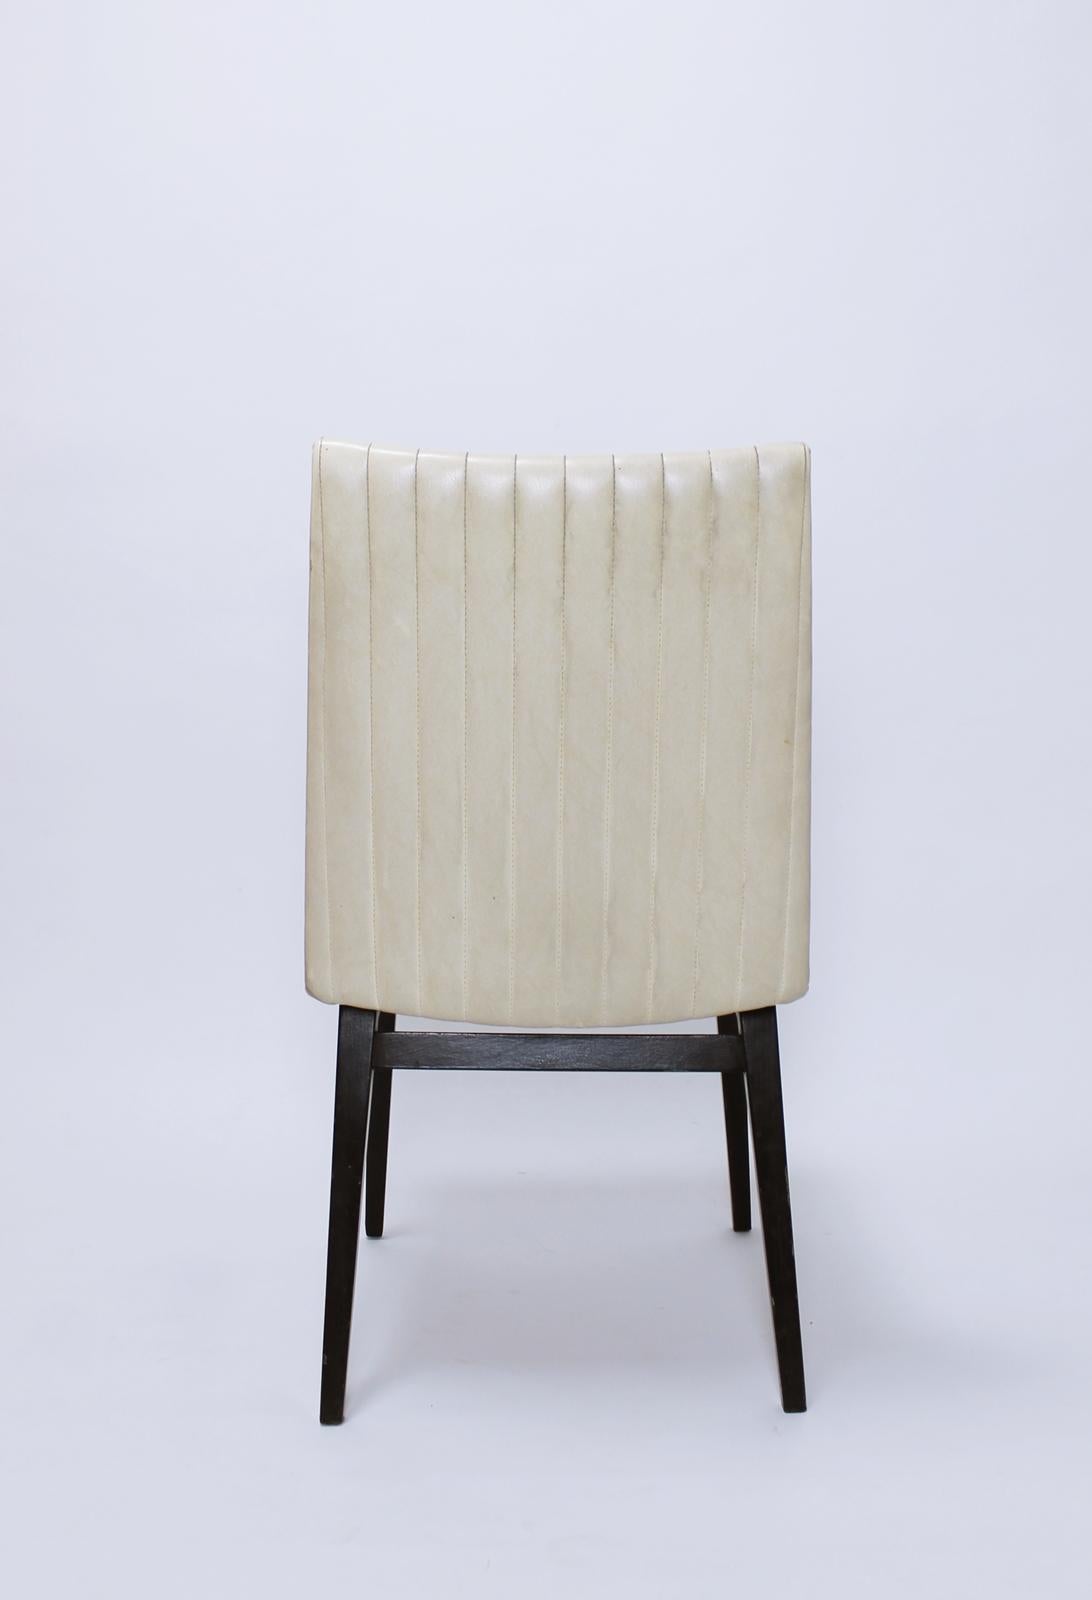 Beech 1 of 4  Austrian Mid Century chairs designed by Oskar Riedel  Wien 1955 For Sale